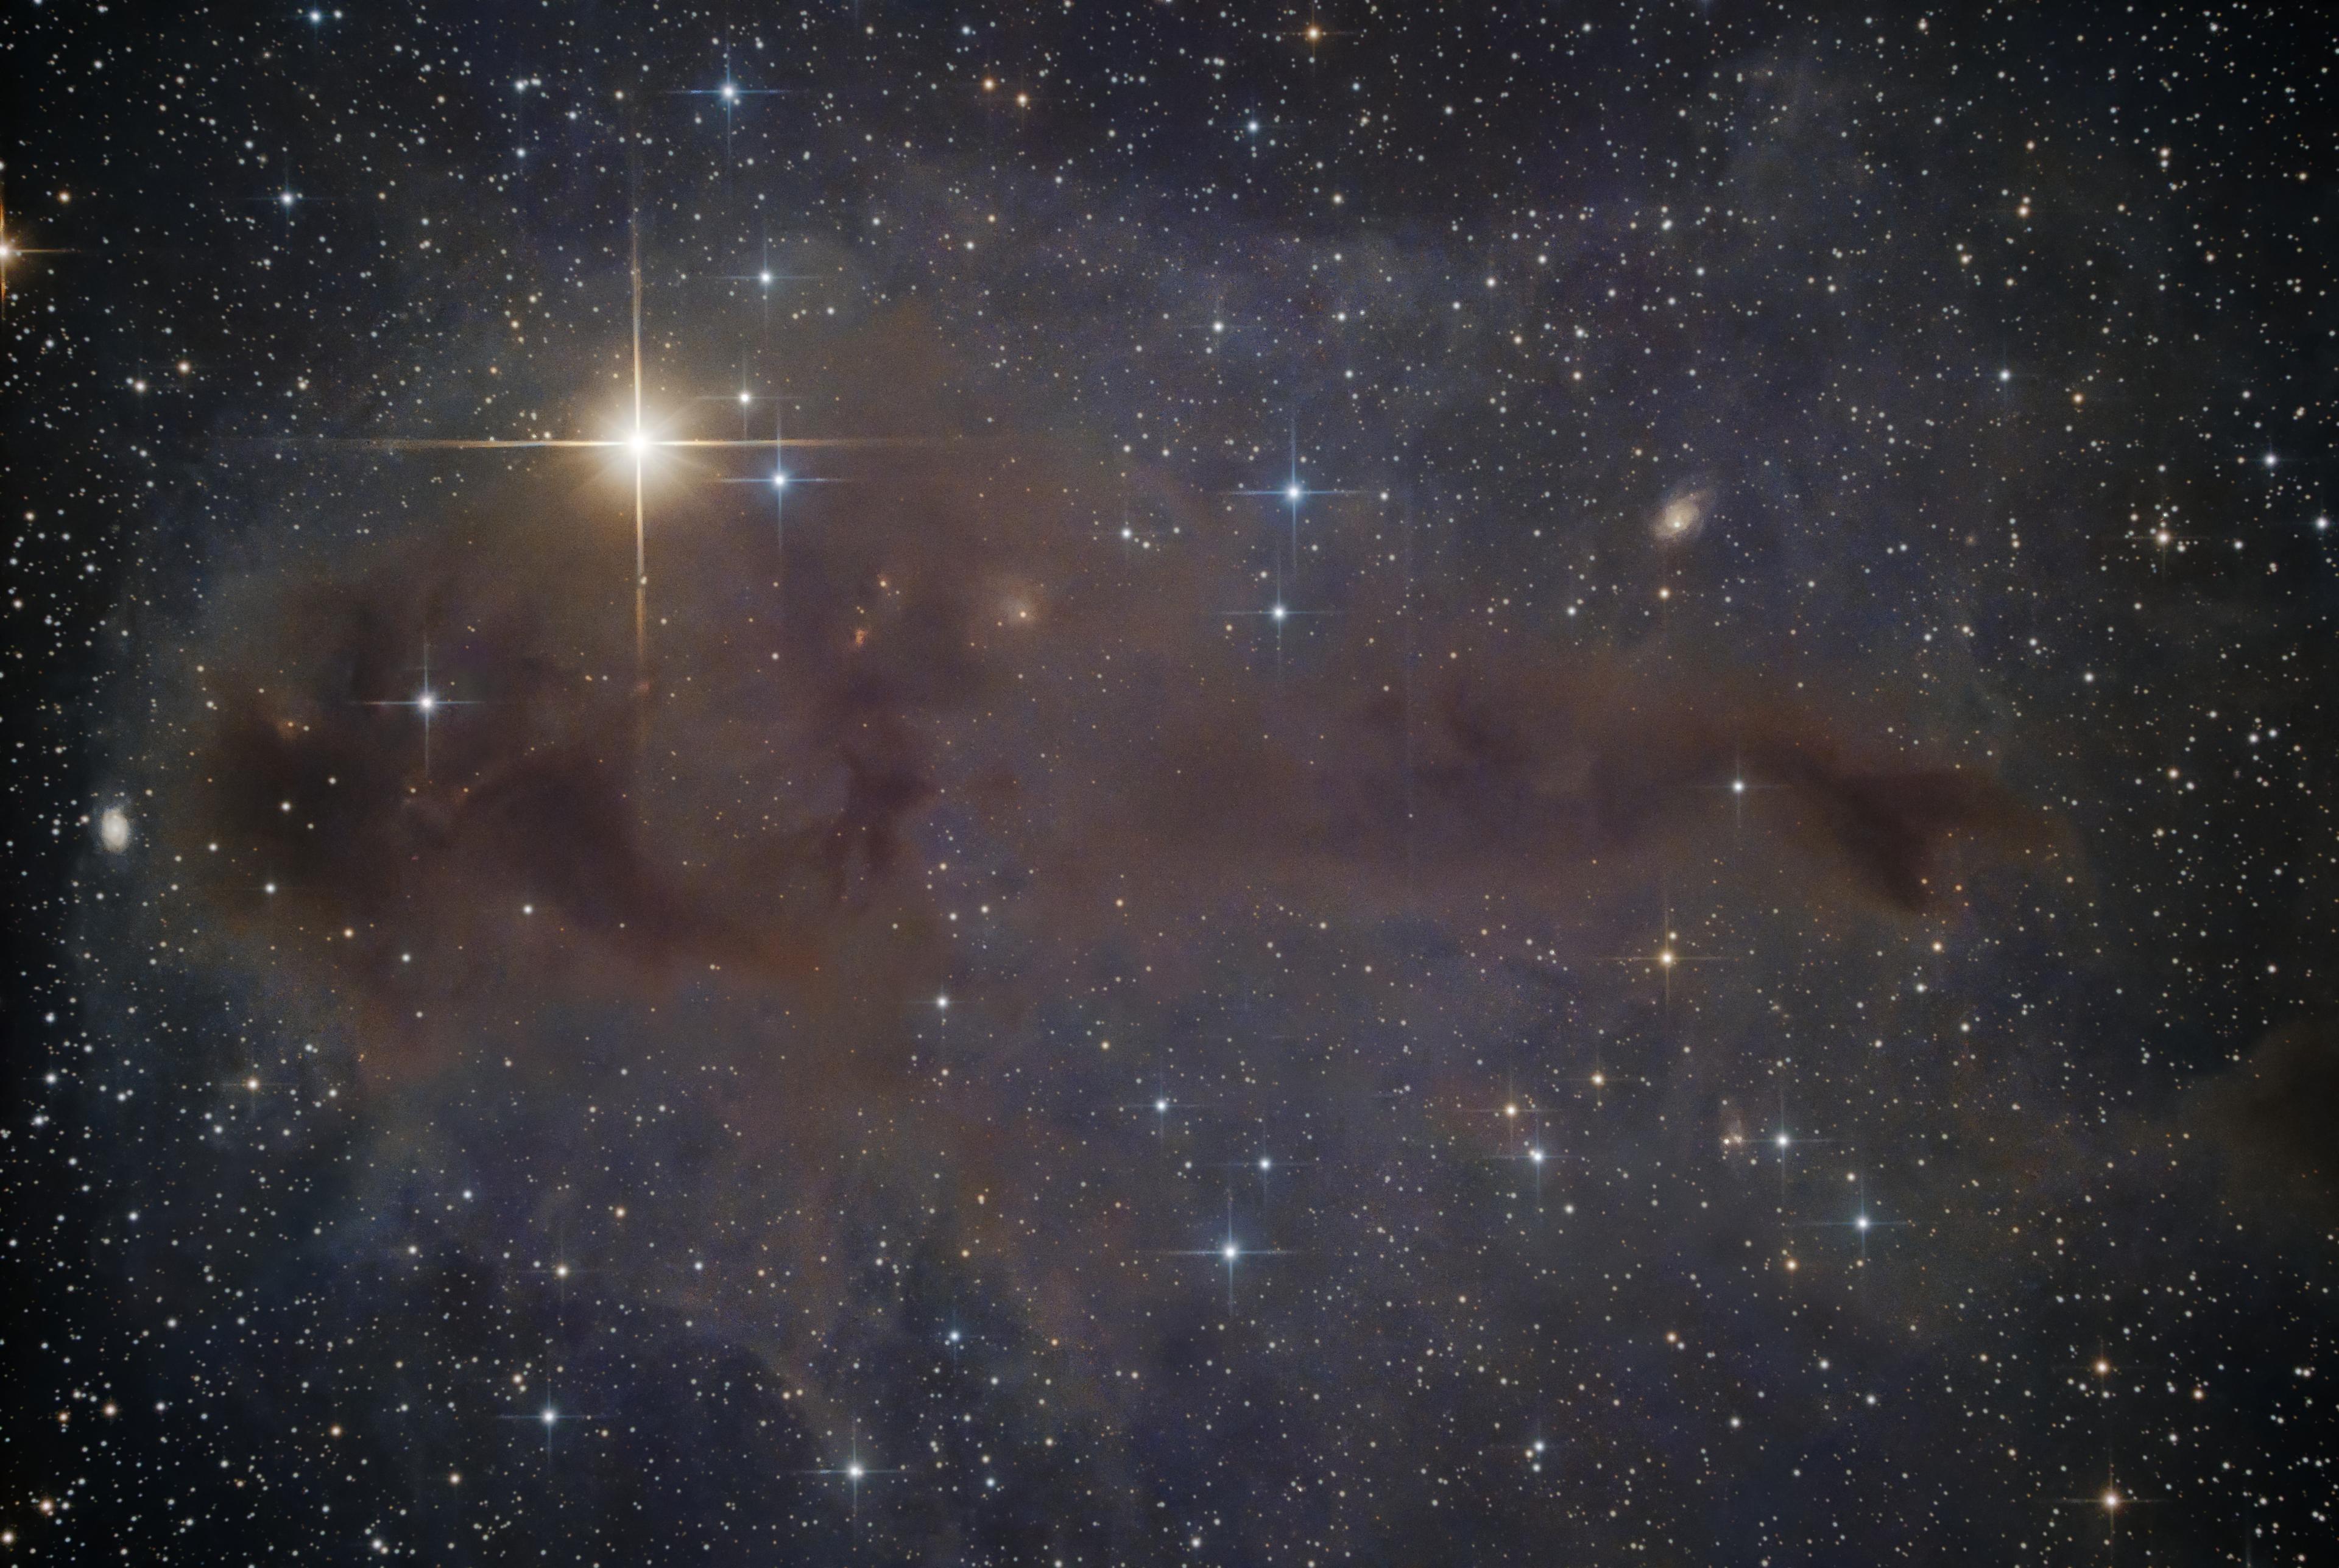 صورة لسحابة بينجمية جزيئية مغبرة في الفضاء العميق تحوي نجوم حديثة التشكل وأمامها نجوم ساطعة مدببة وفي الخلفية بعض المجرات السحيقة.